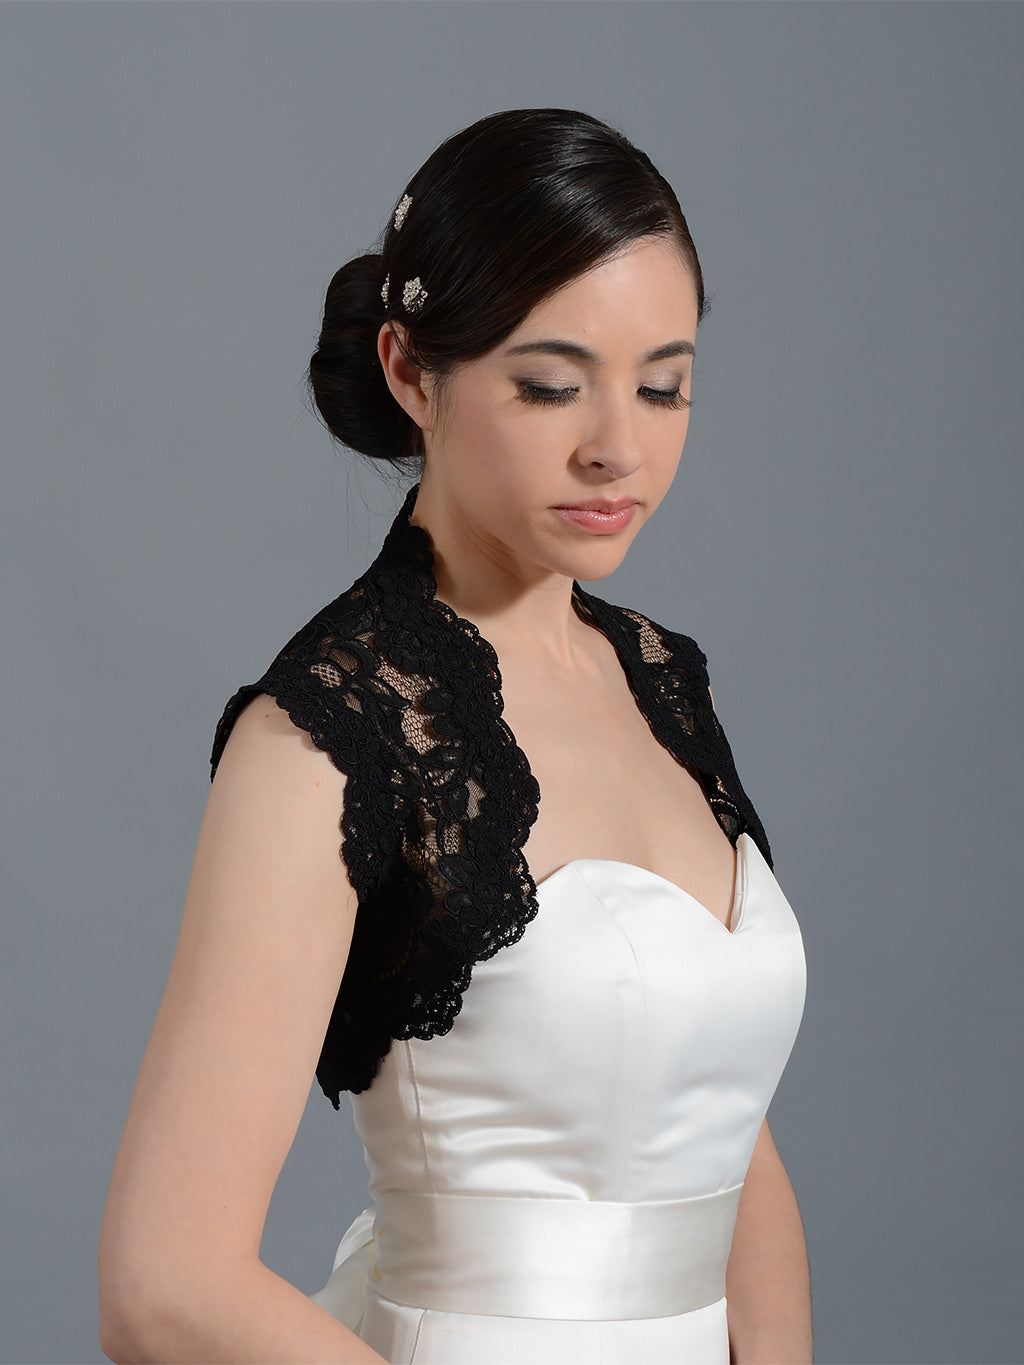 Black sleeveless bridal alencon lace bolero jacket